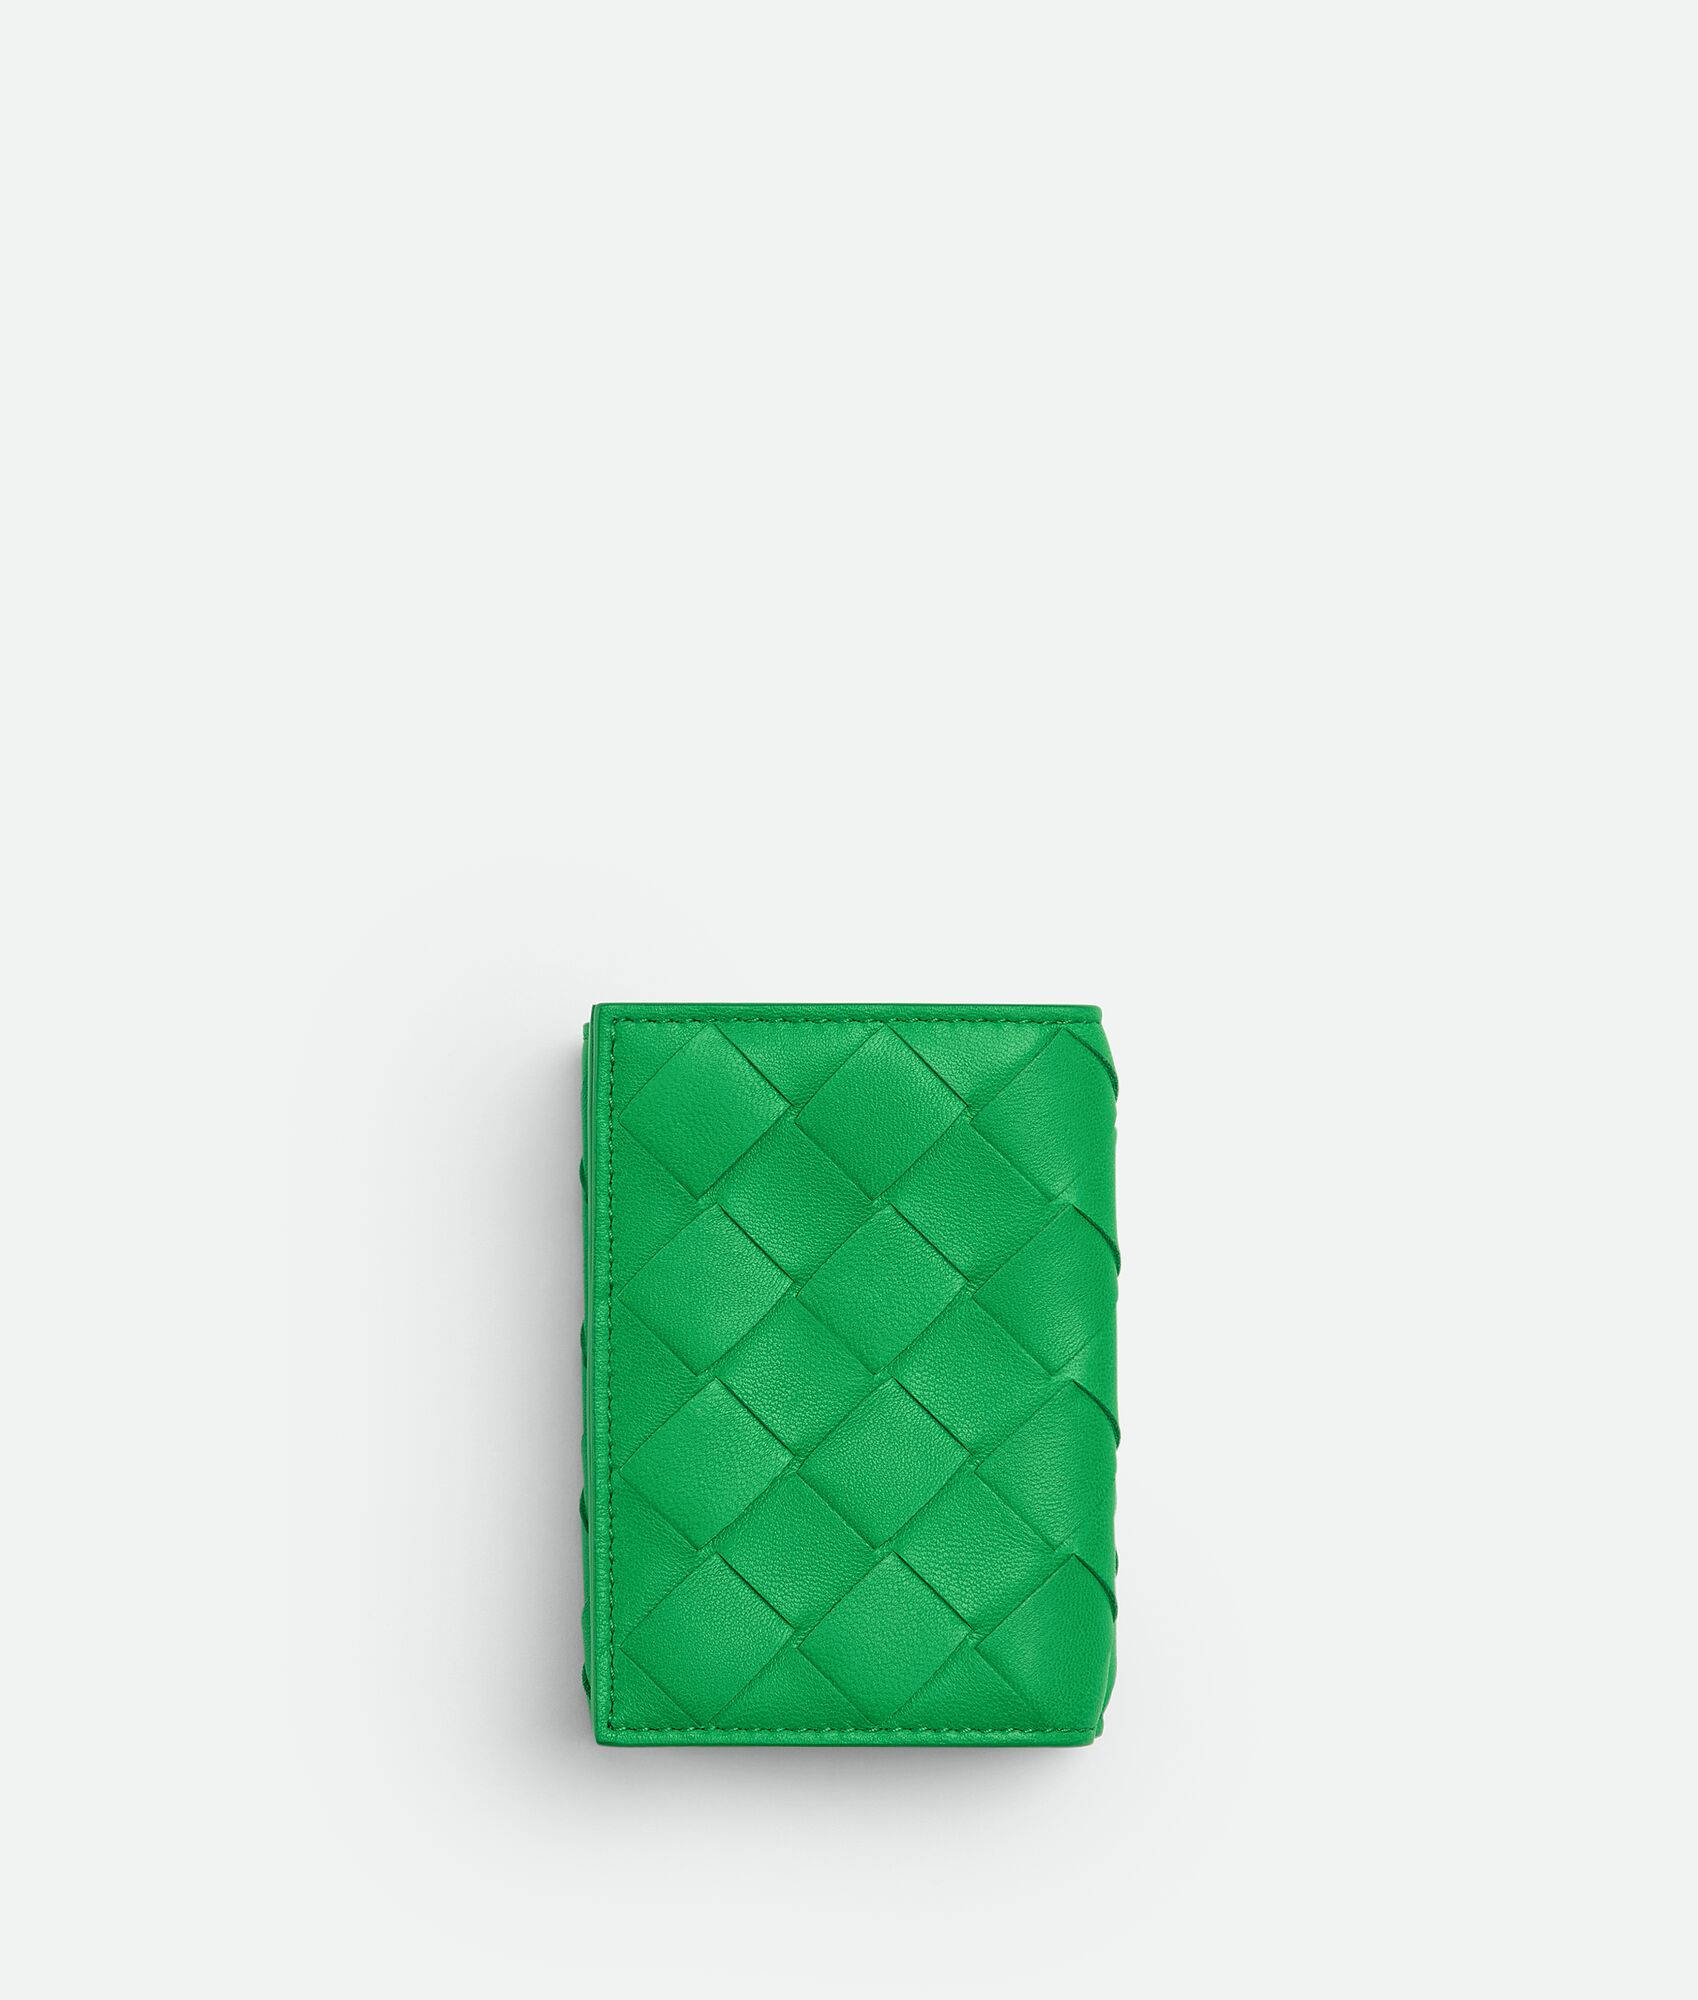 40代女性におすすめなセンスのいいレディース財布は、ボッテガ・ヴェネタのタイニー 三つ折りウォレット